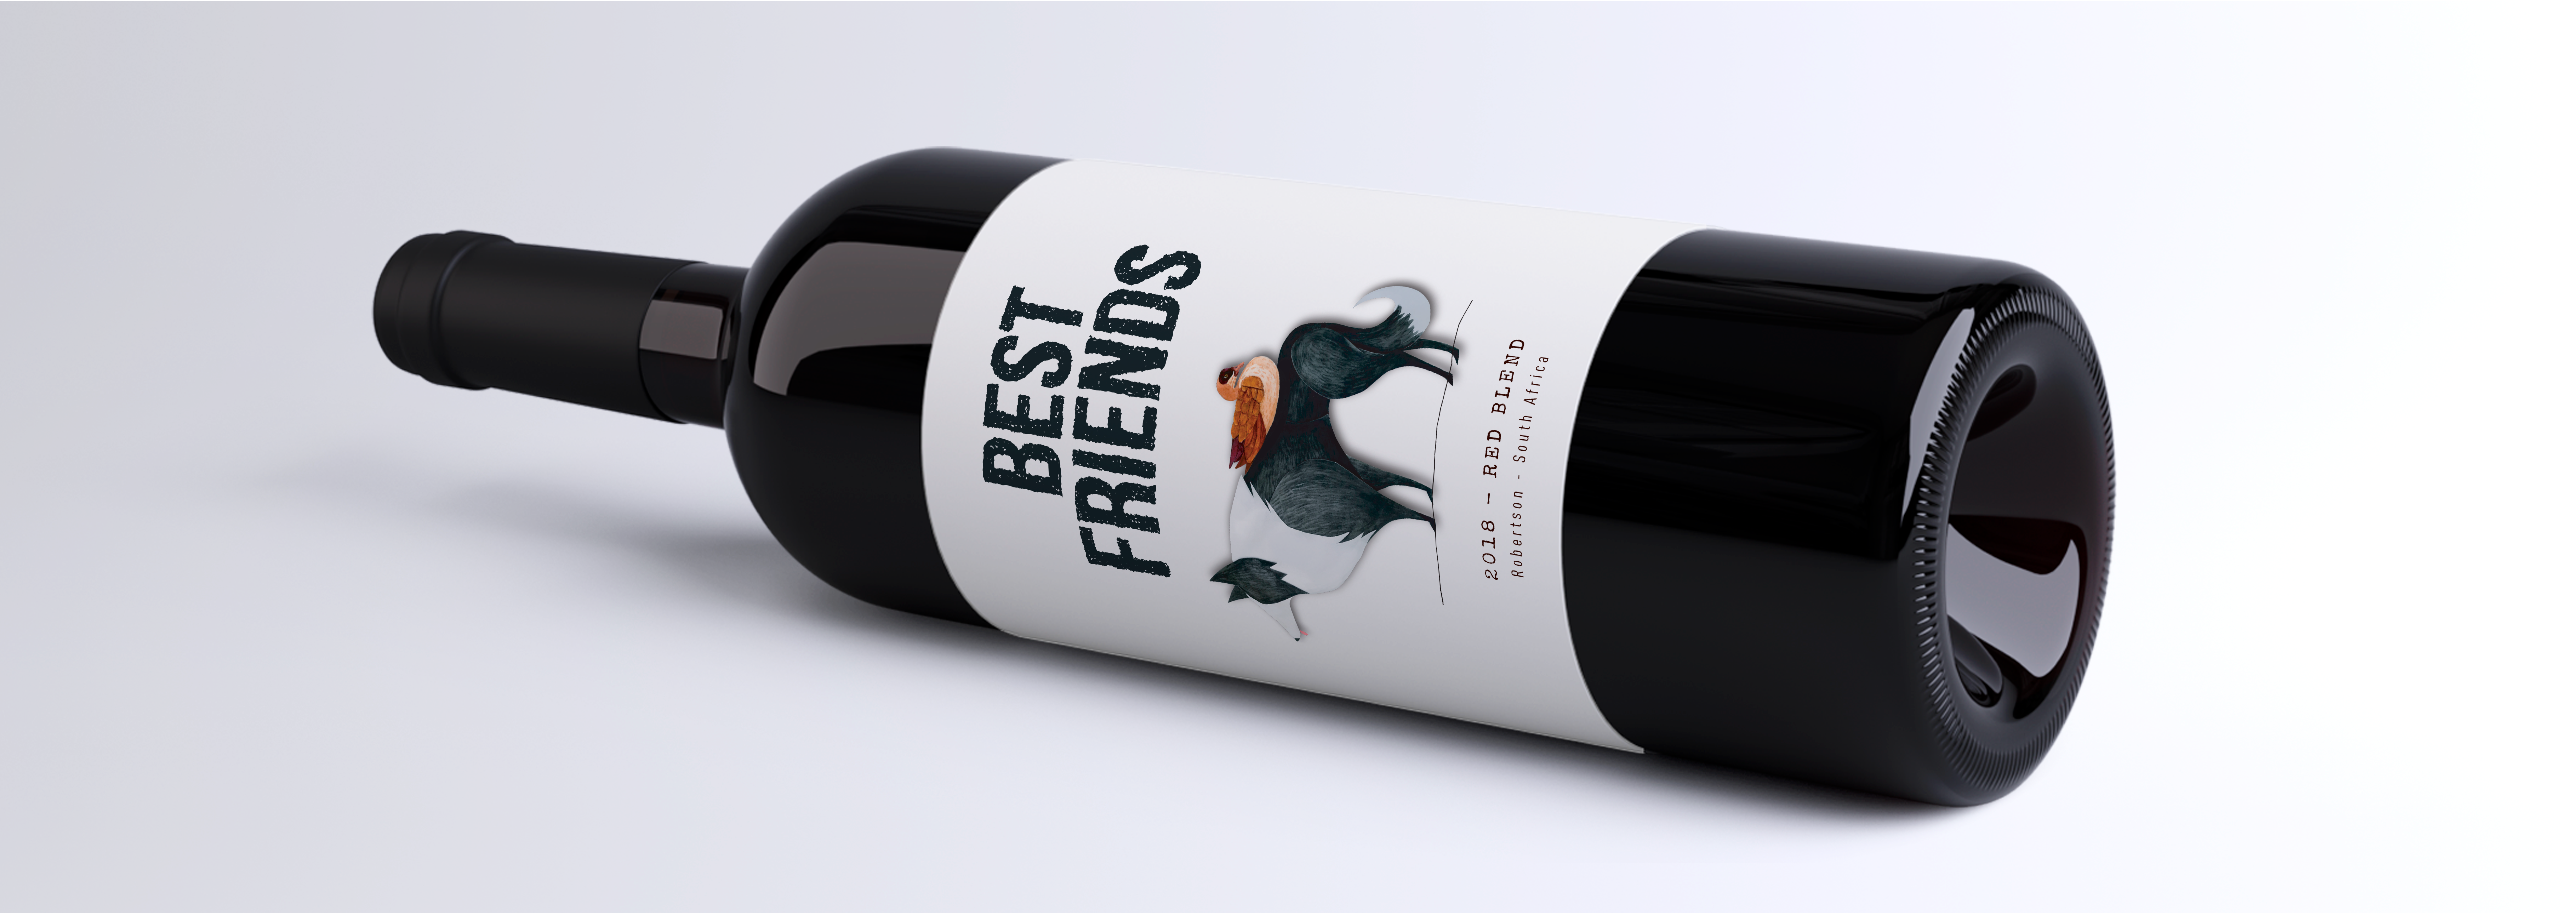 Best Friends - Zandvliet Wine Label Design-4